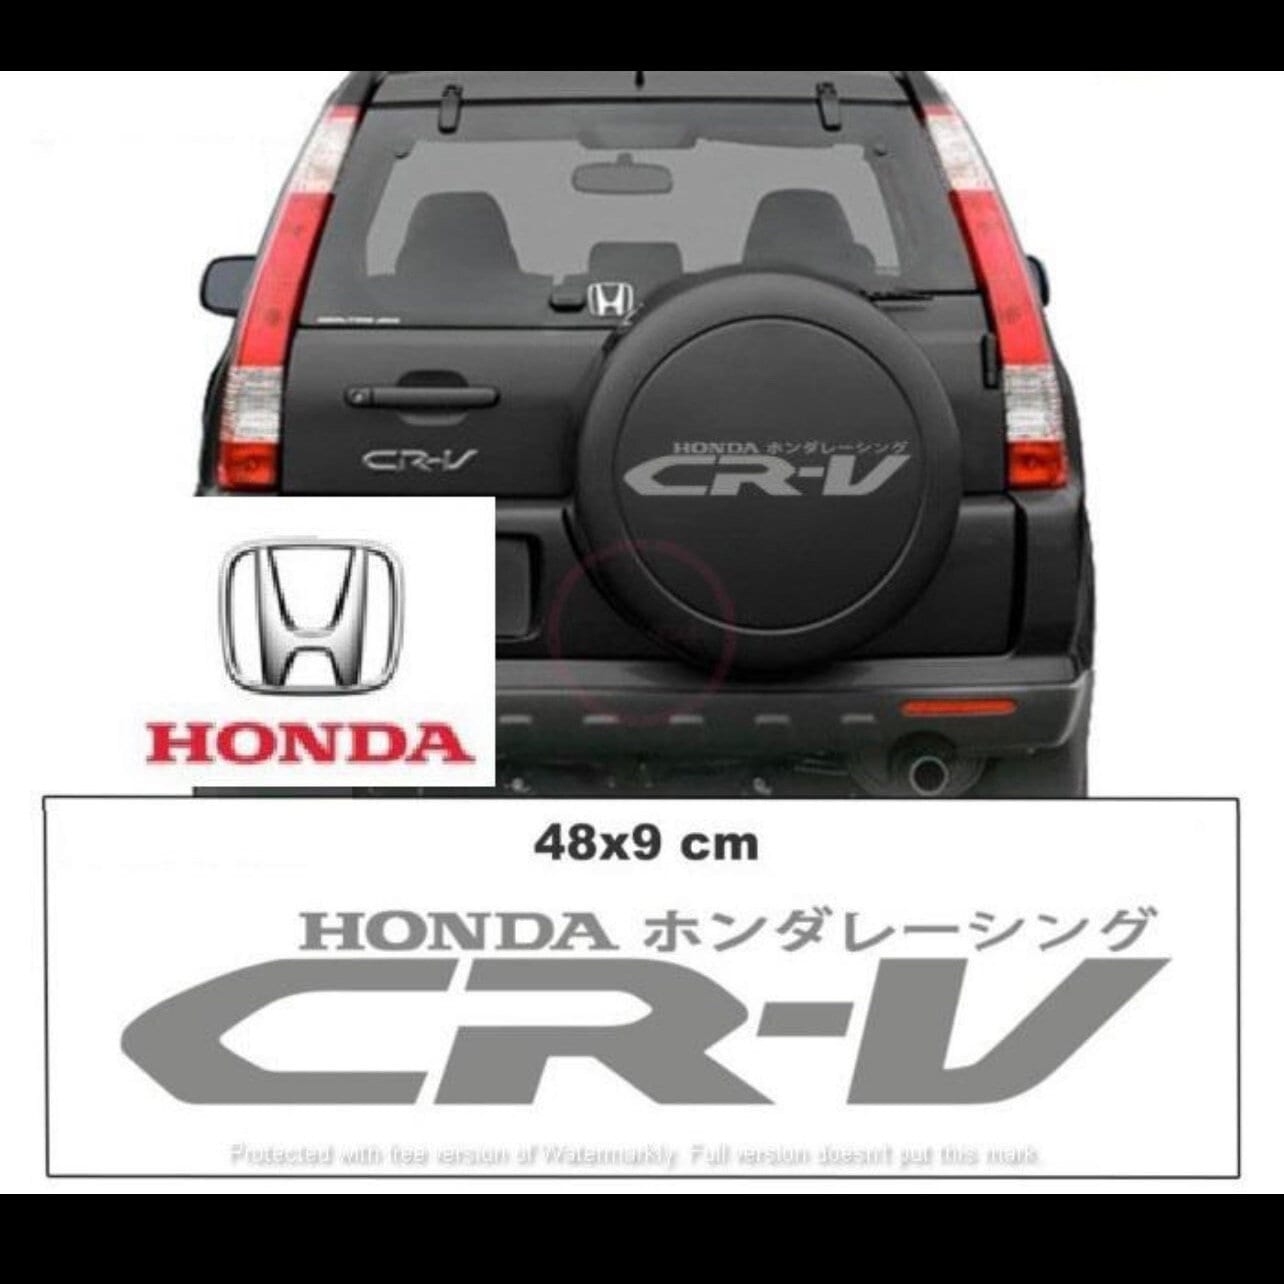 Buy Honda Crv Tire Cover Online In India Etsy India